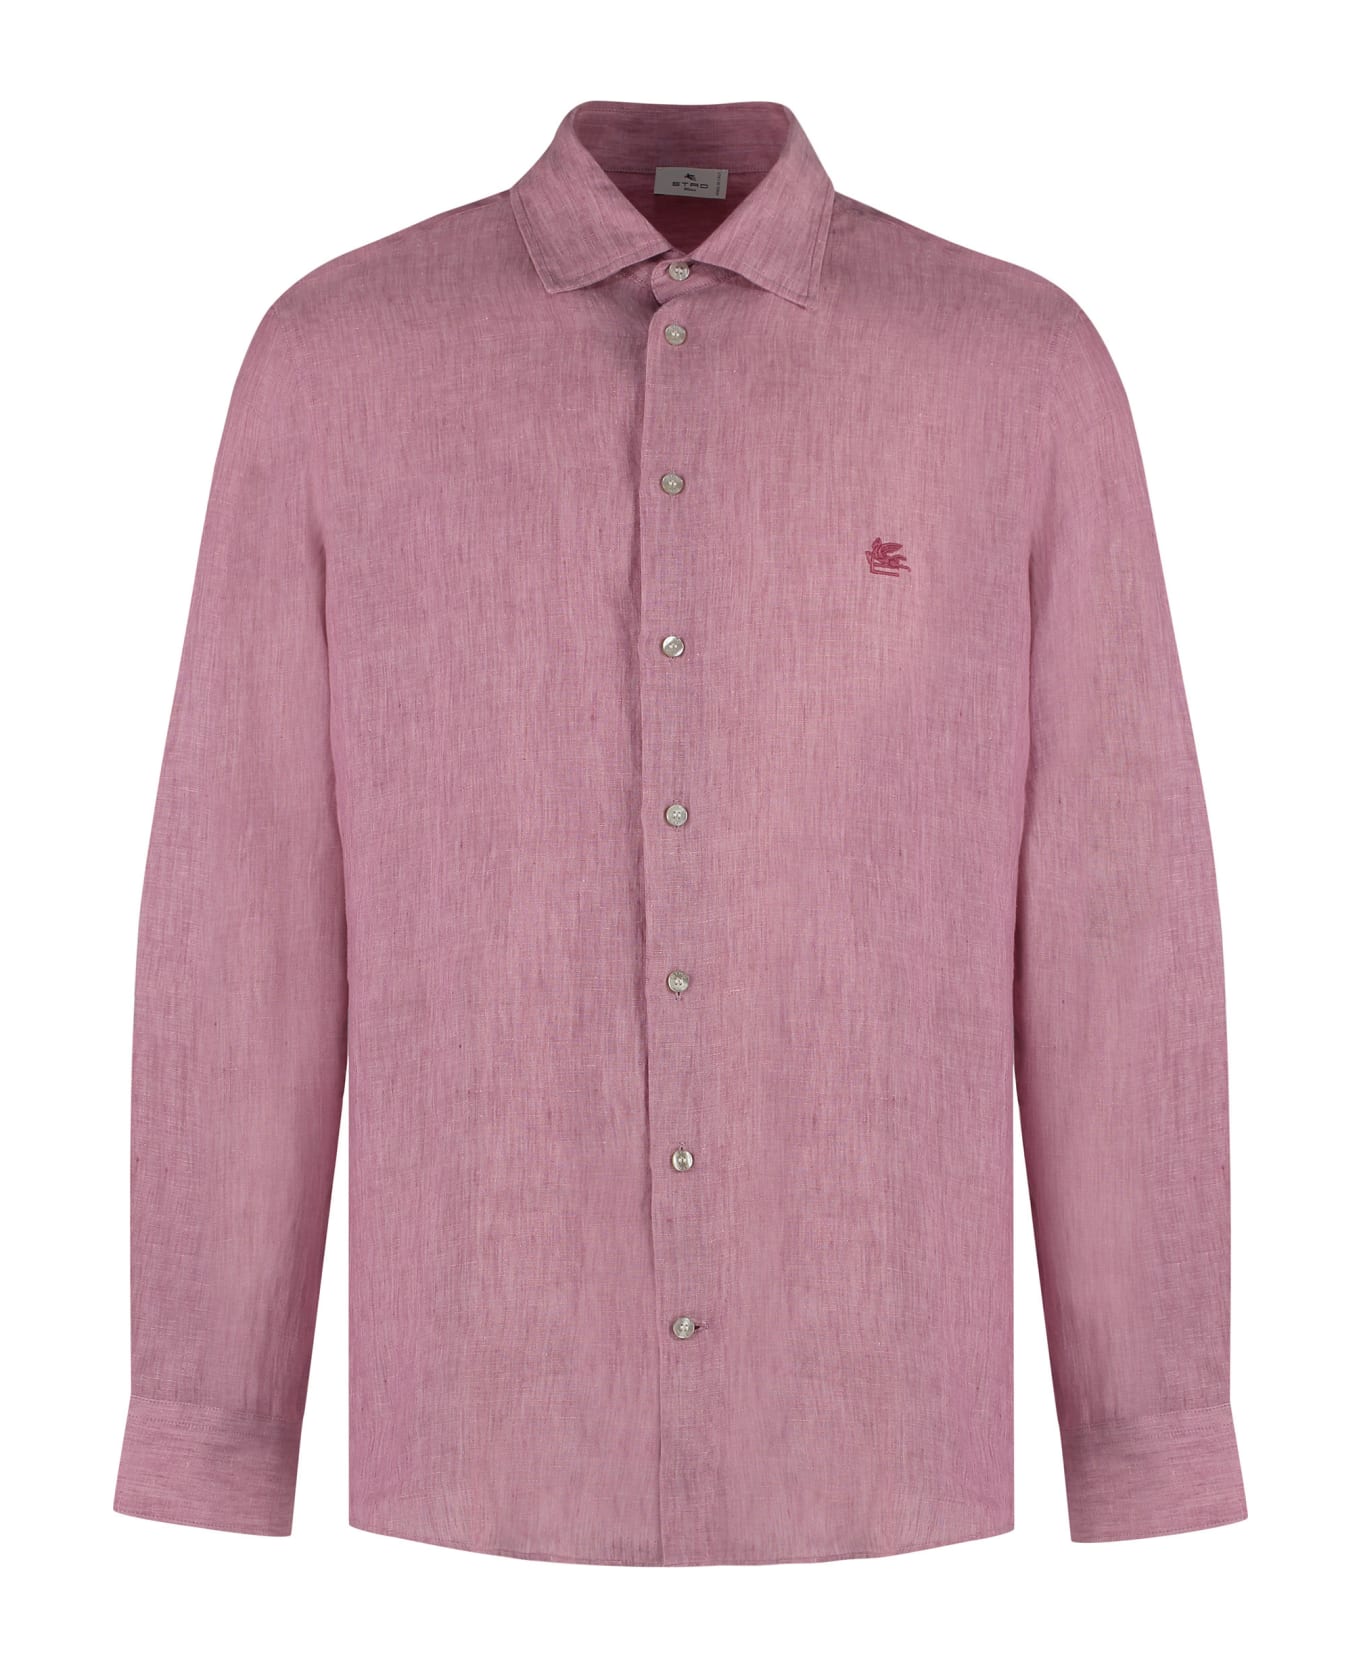 Etro ìlinen Shirt - Pink